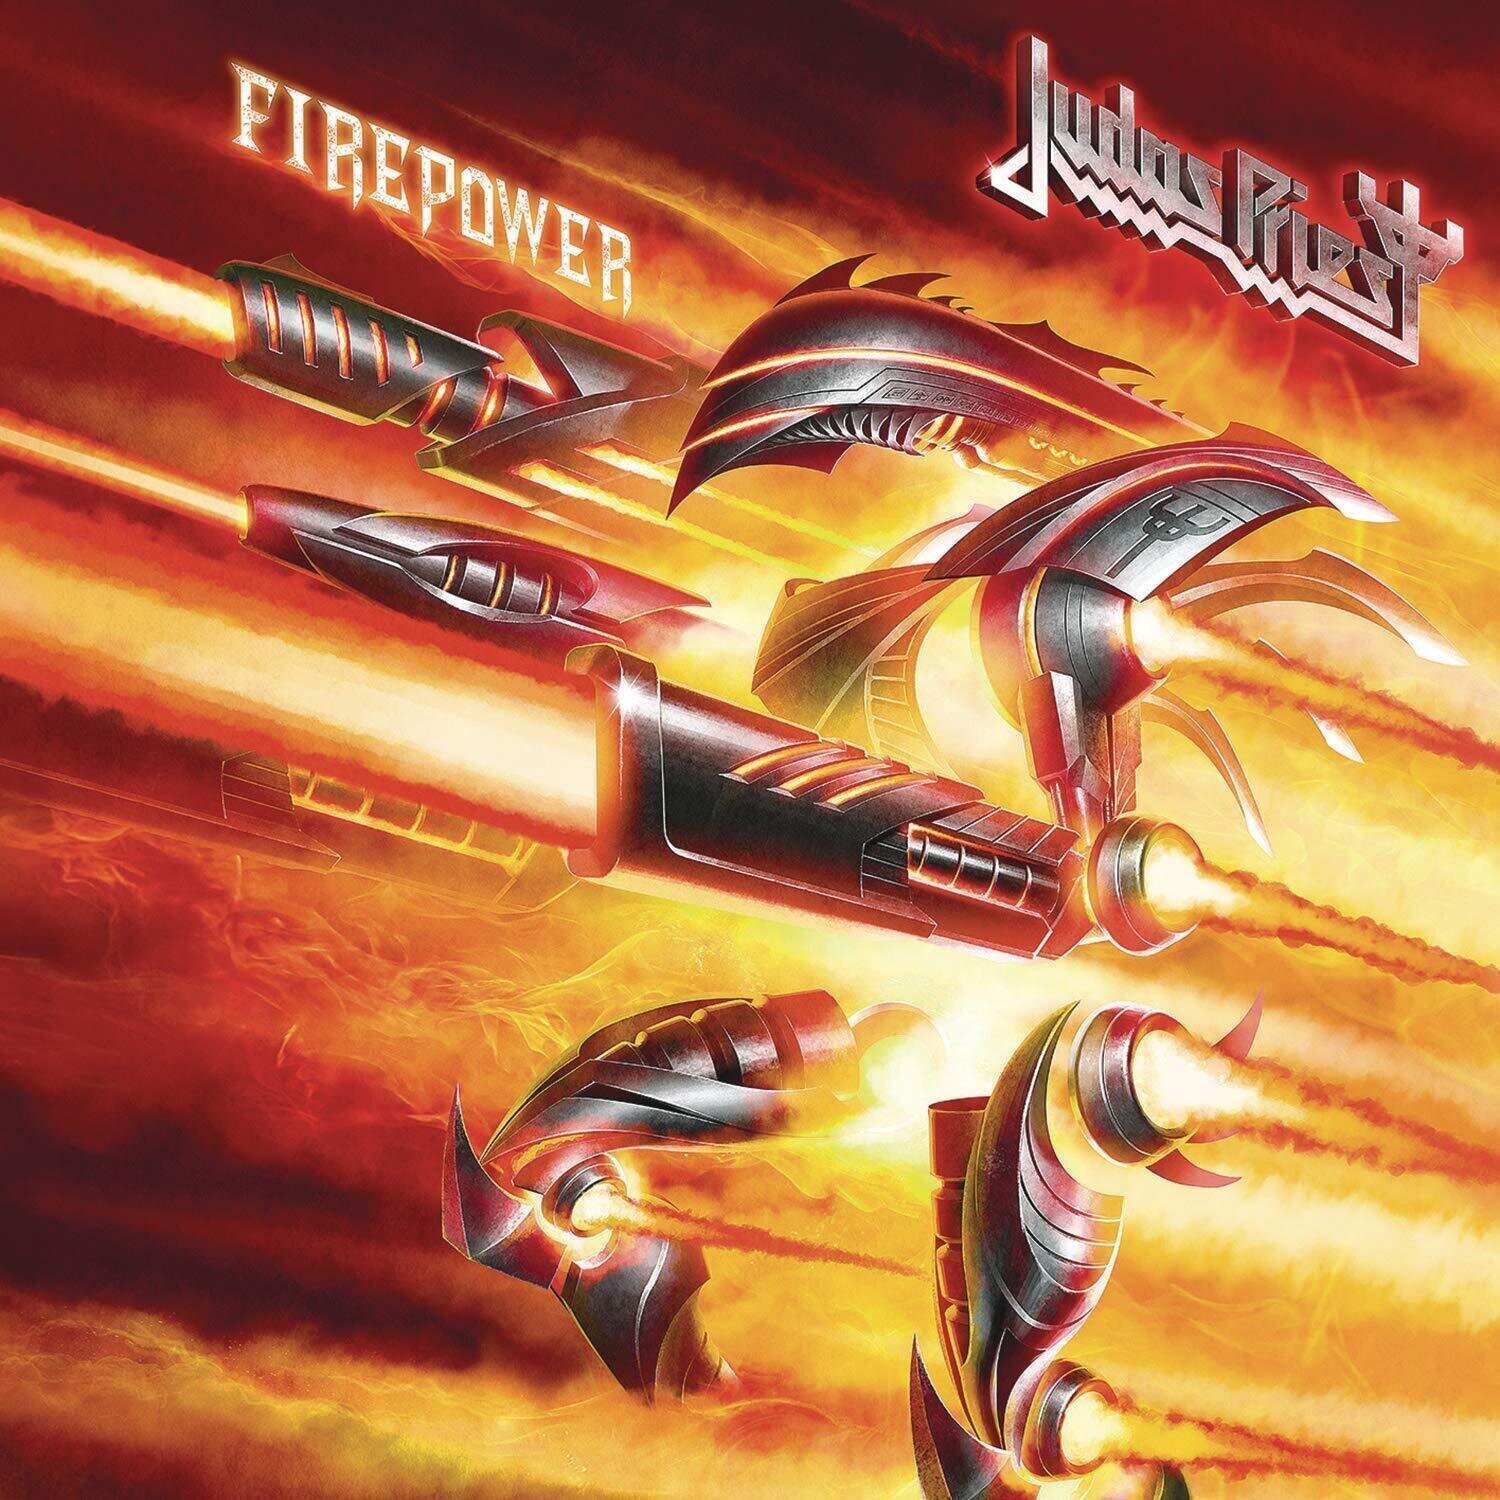 Musik-CD Judas Priest - Firepower (CD)